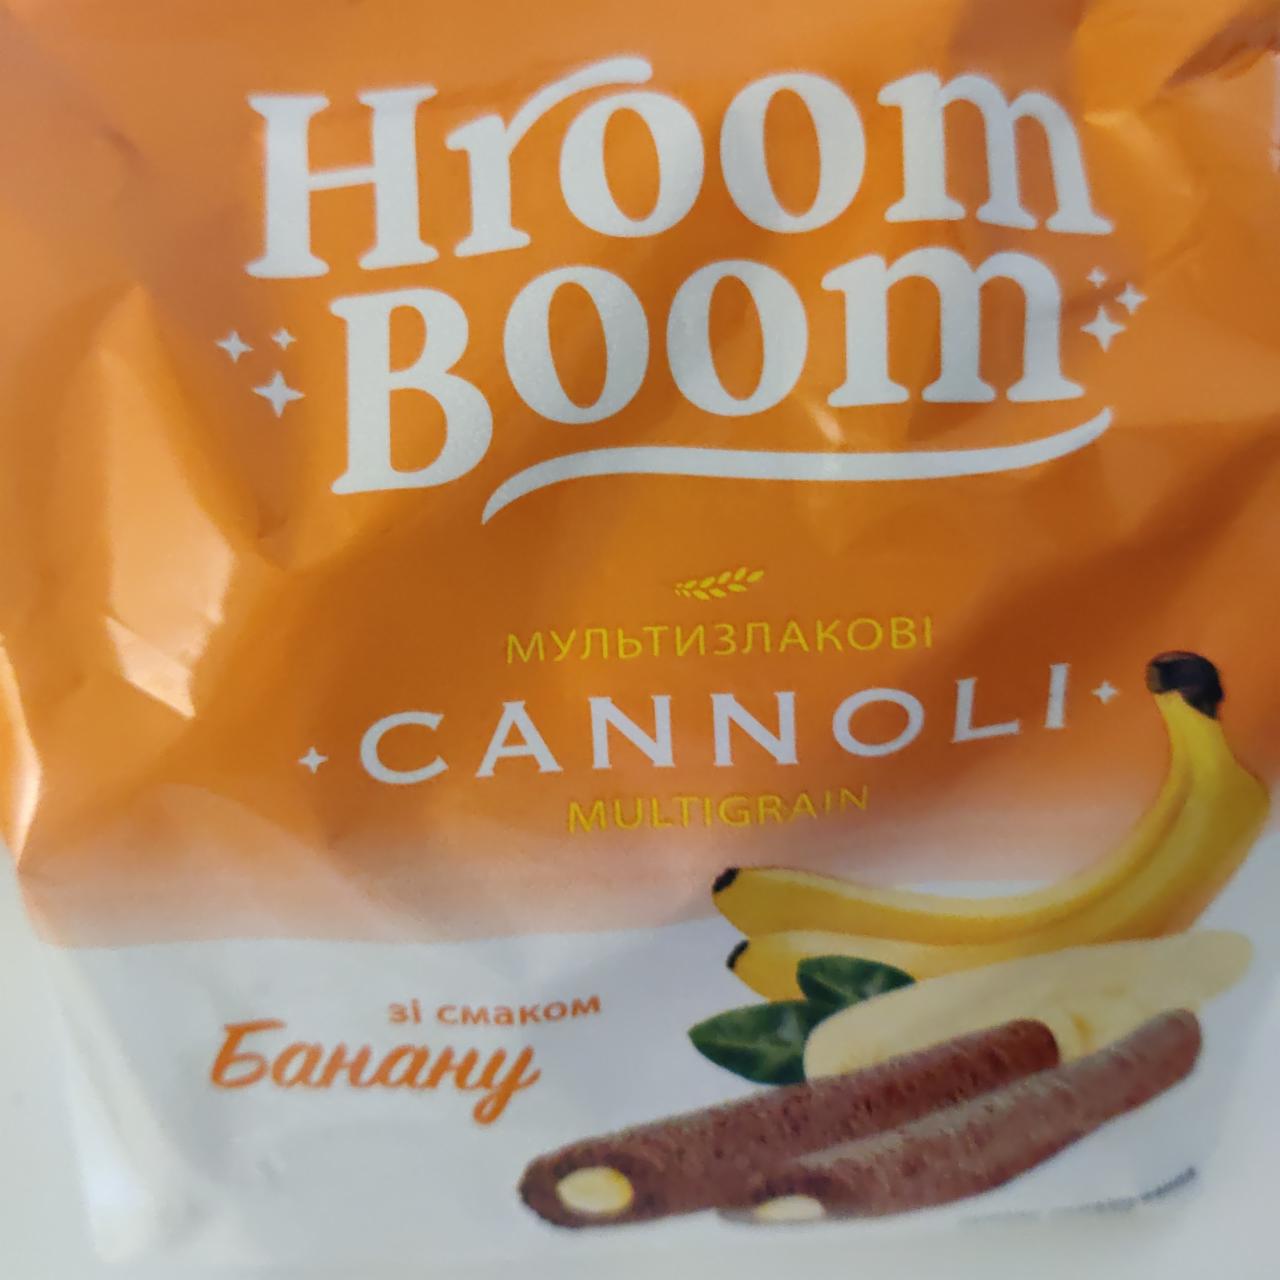 Фото - Трубочки Каноллі зі смаком банану Hroom Boom